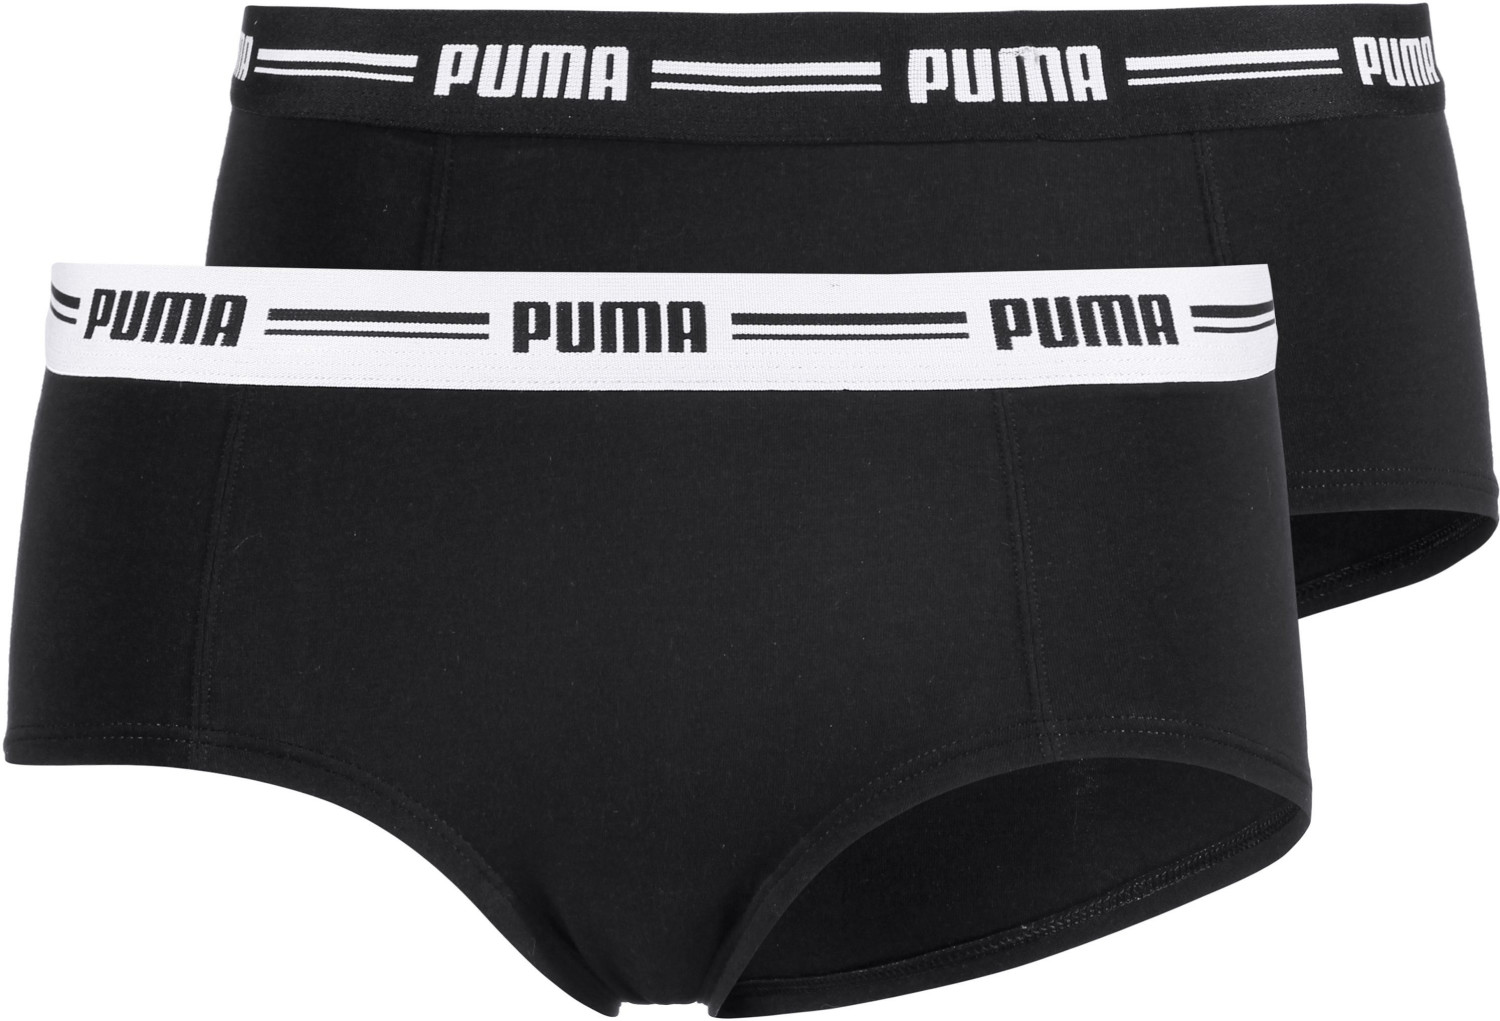 Puma Boxer 2er Pack Women black/white (5730100010)